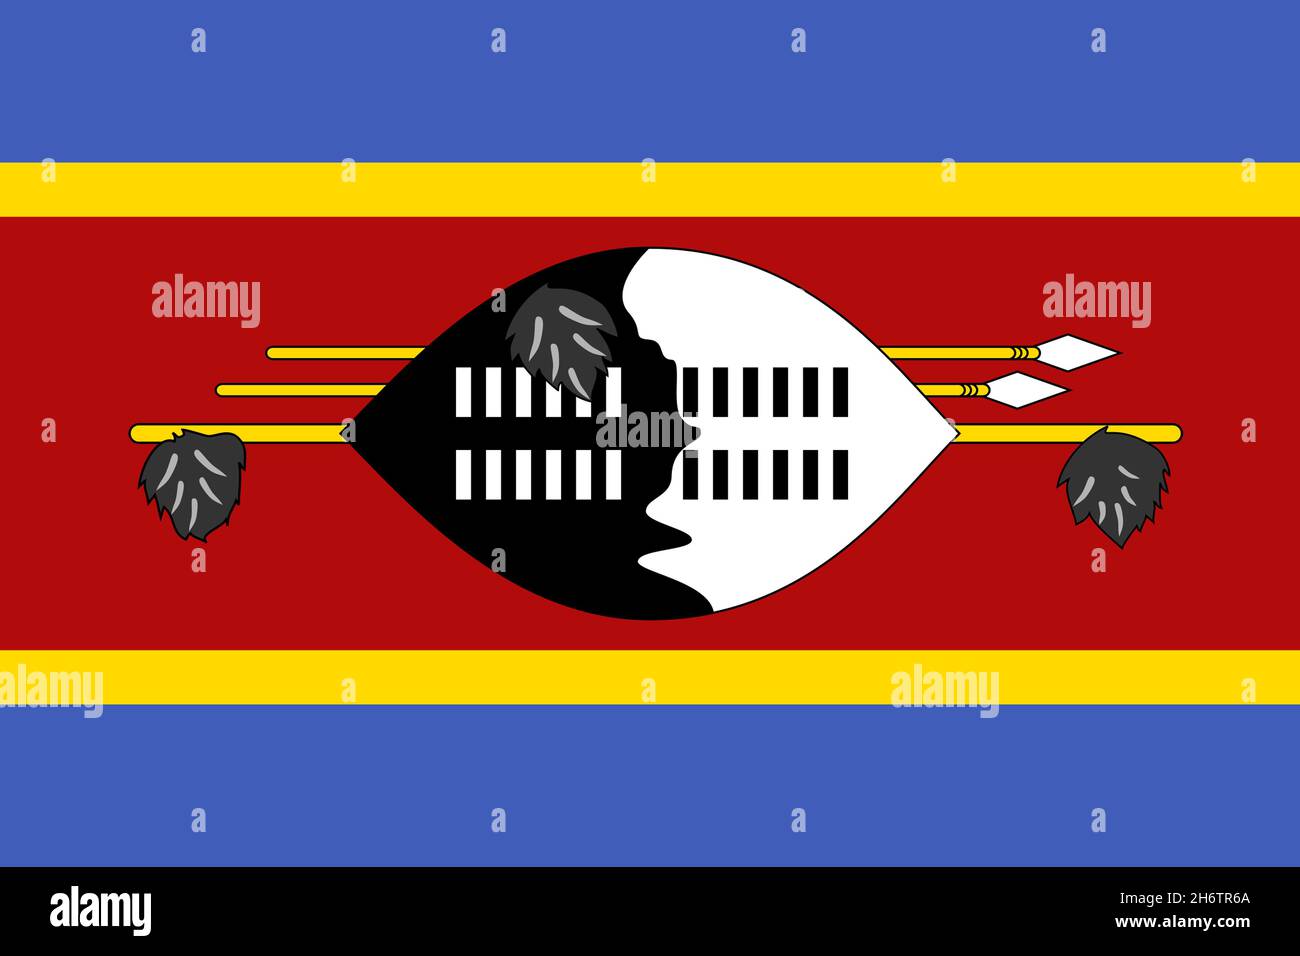 Nationalfahne von Eswatini, Königreich Eswatini, Kingdom of Eswatini, bis 2018 offiziell Swasiland, Swaziland Stock Photo